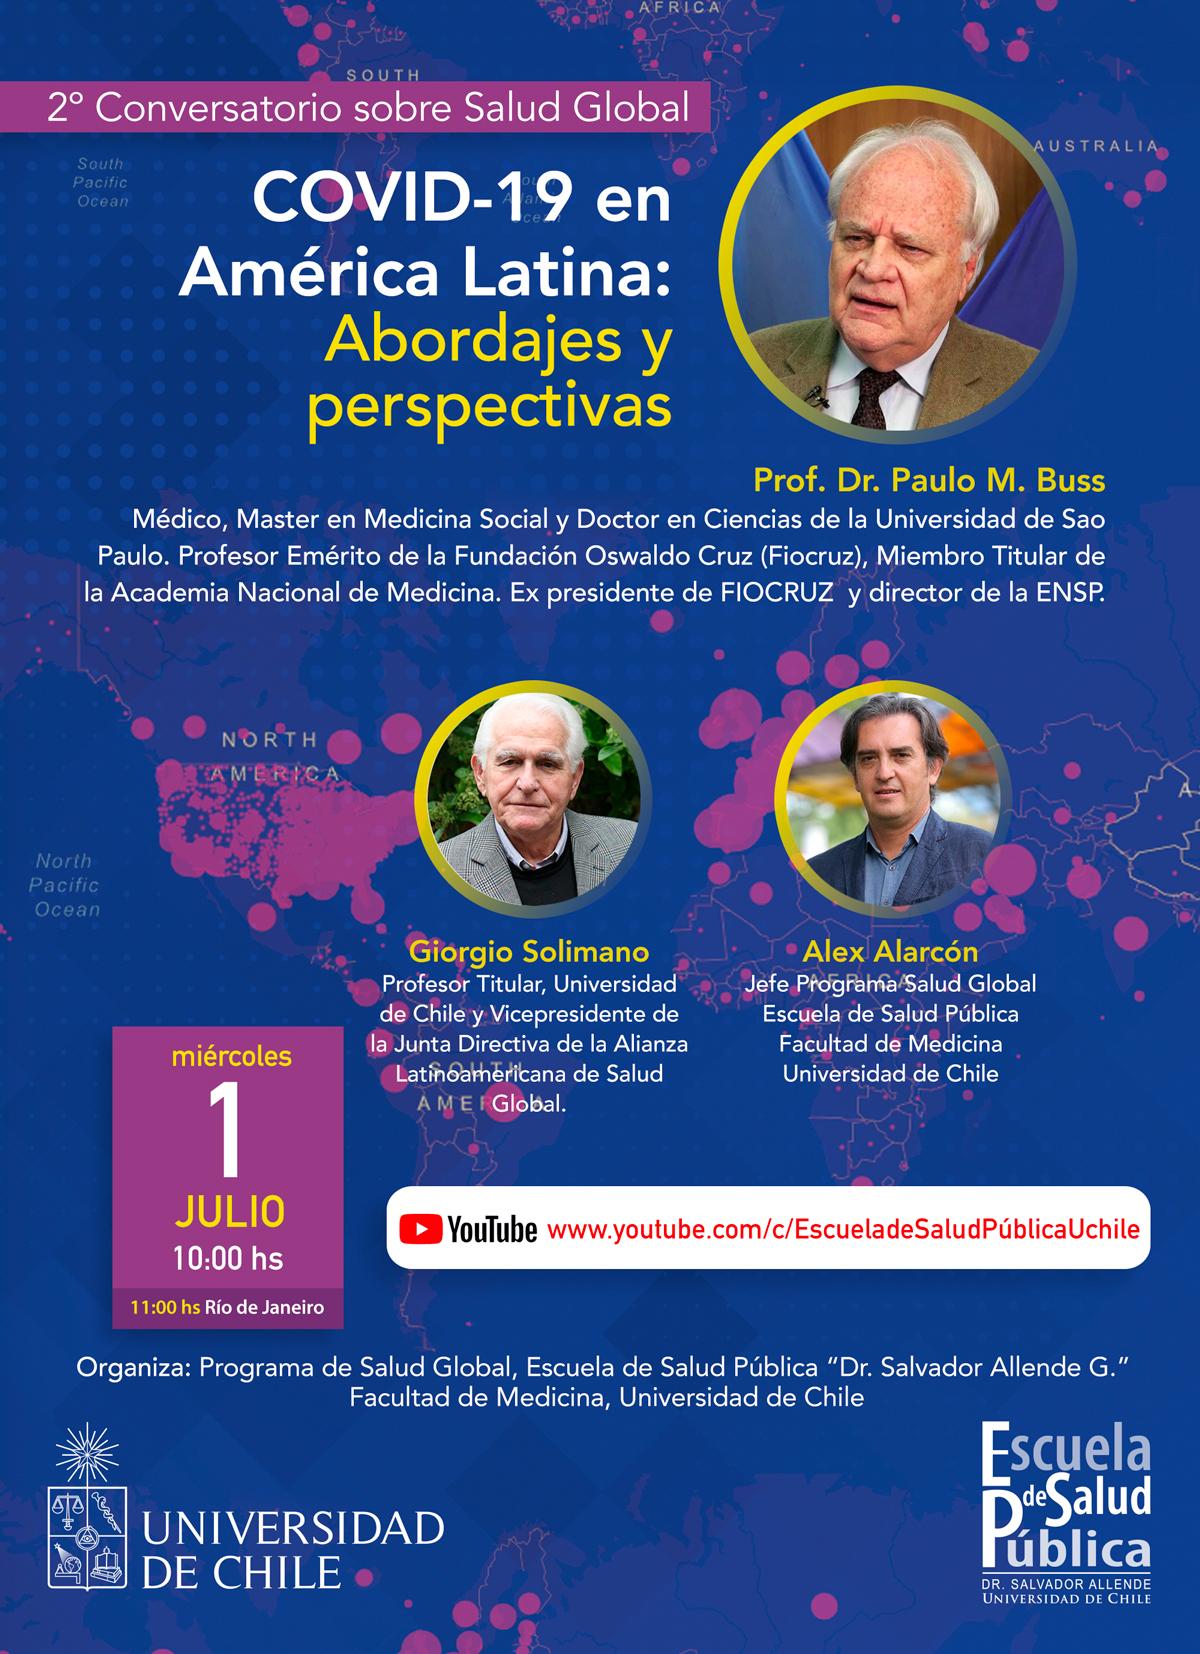  2º Conversatorio Programa de Salud Global, "COVID19 en America Latina: Abordajes y Perspectivas"